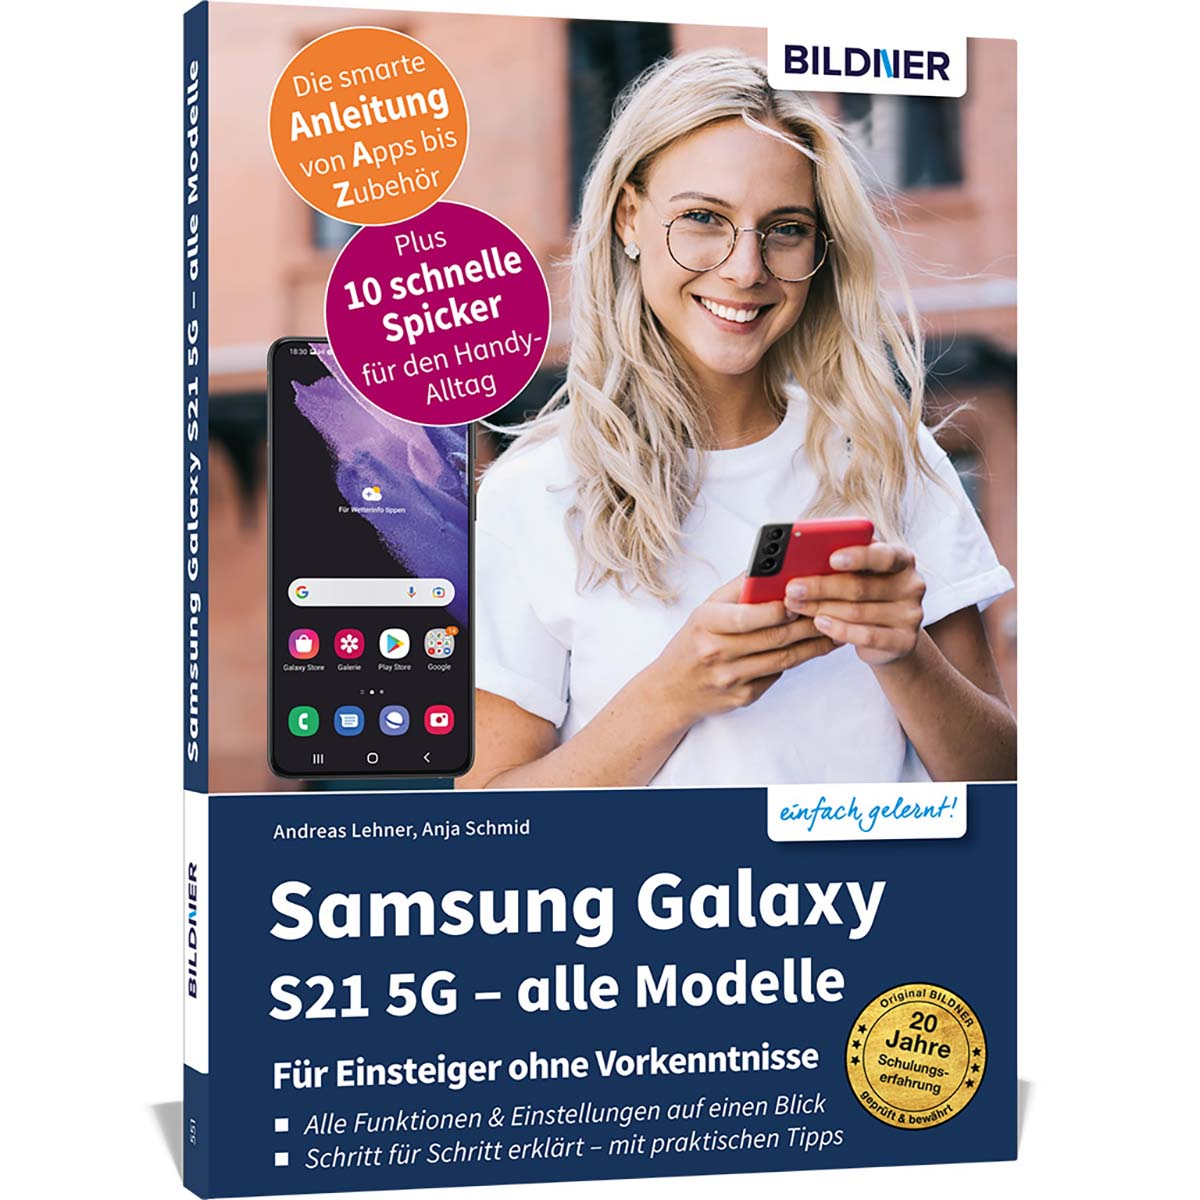 Samsung Galaxy S21 5G - Modelle alle